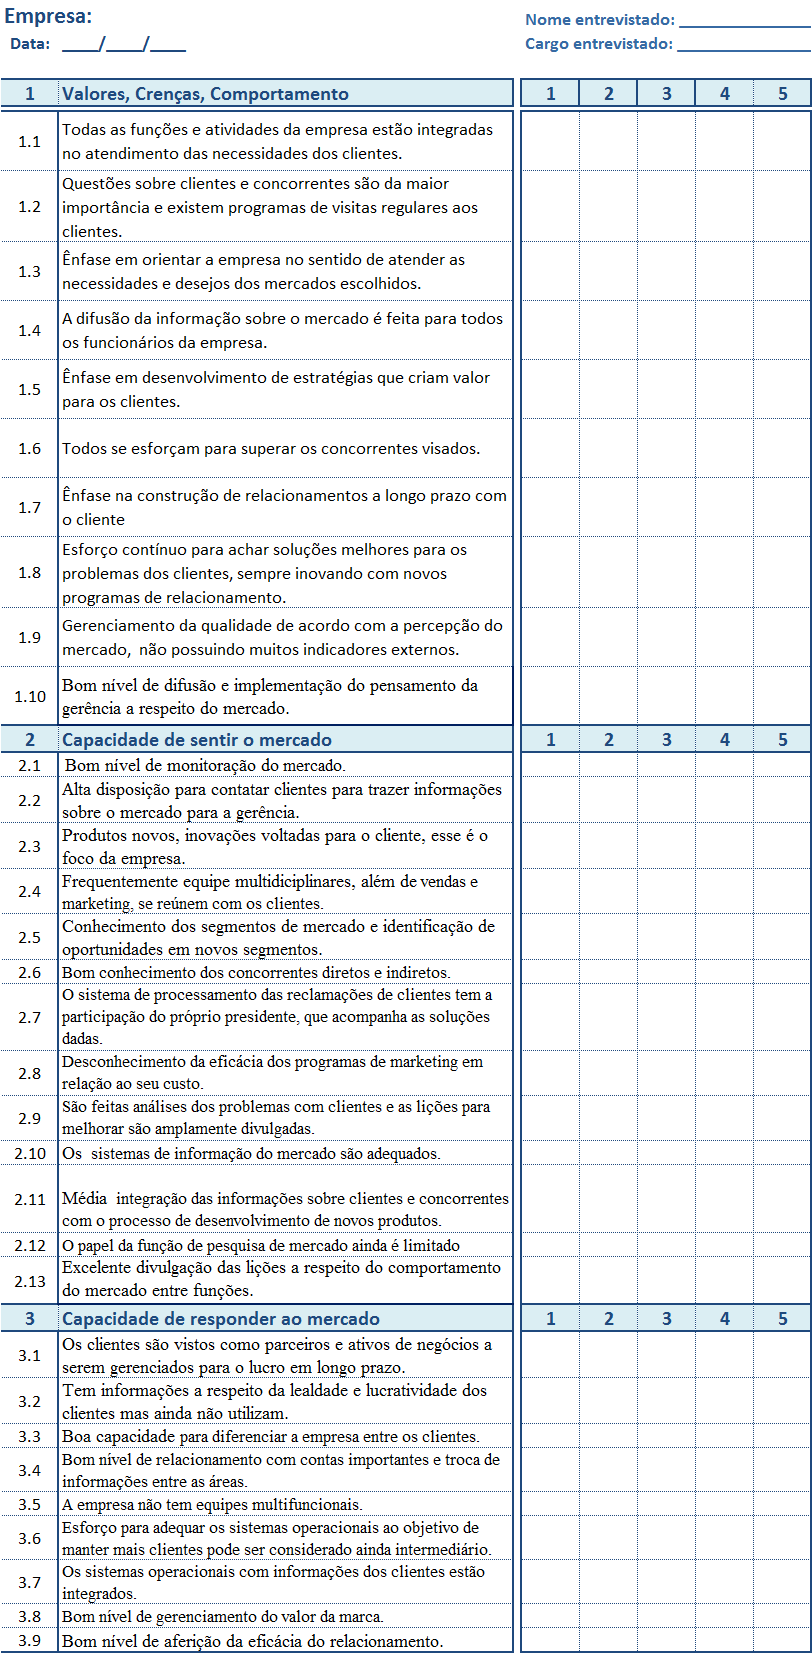 APÊNDICE 3- Formulários com questões